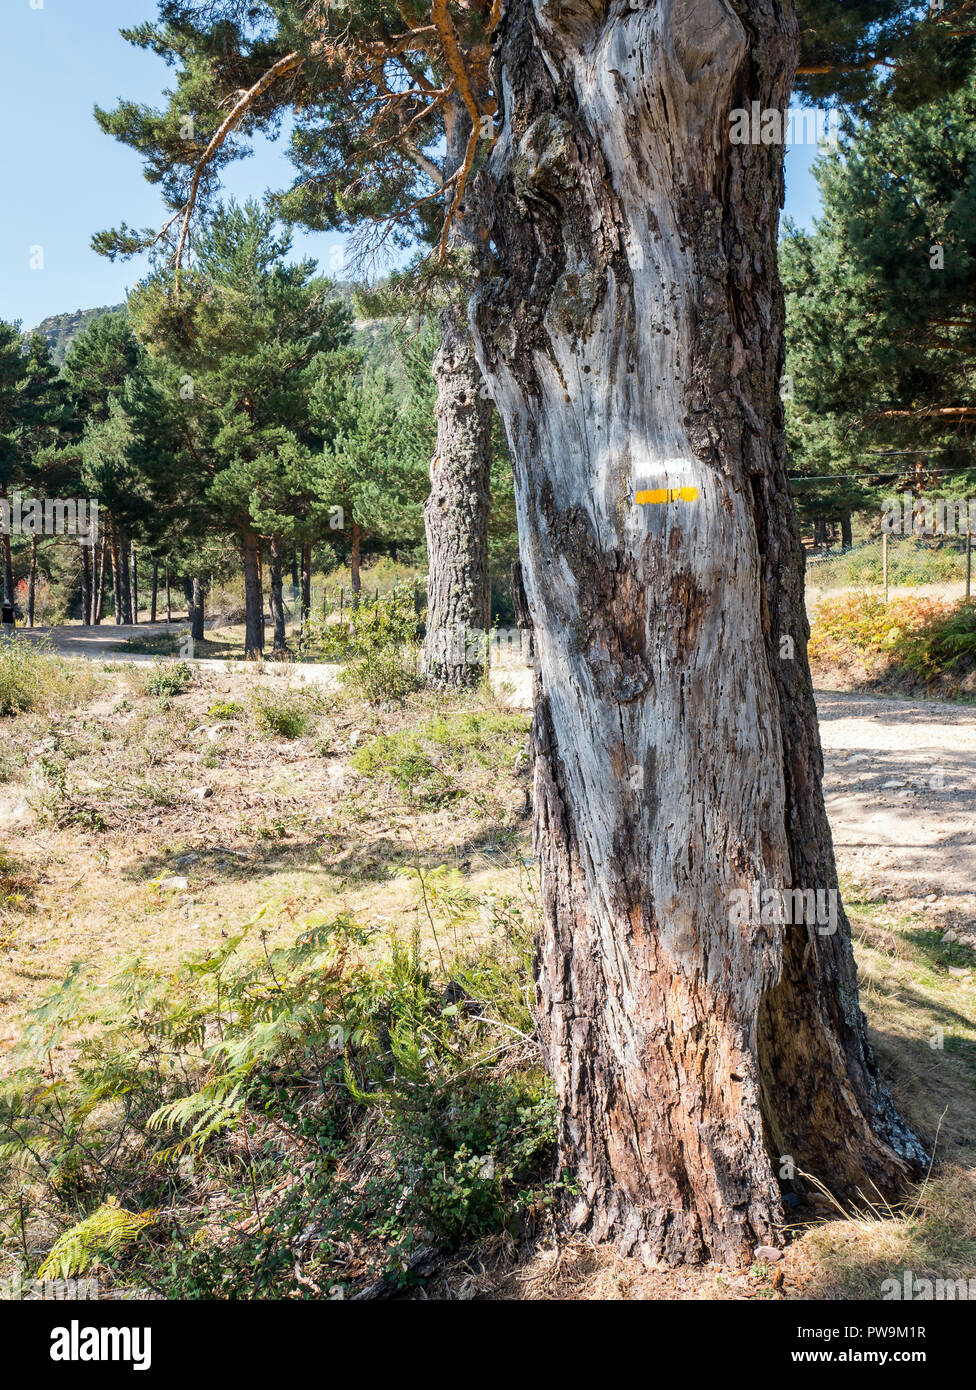 Señal de sendero sobre un pino. Valle de la Barranca en la Sierra de Guadarrama y dentro del 'Parque regional de la cuenca alta del Manzanares' (reser Stock Photo